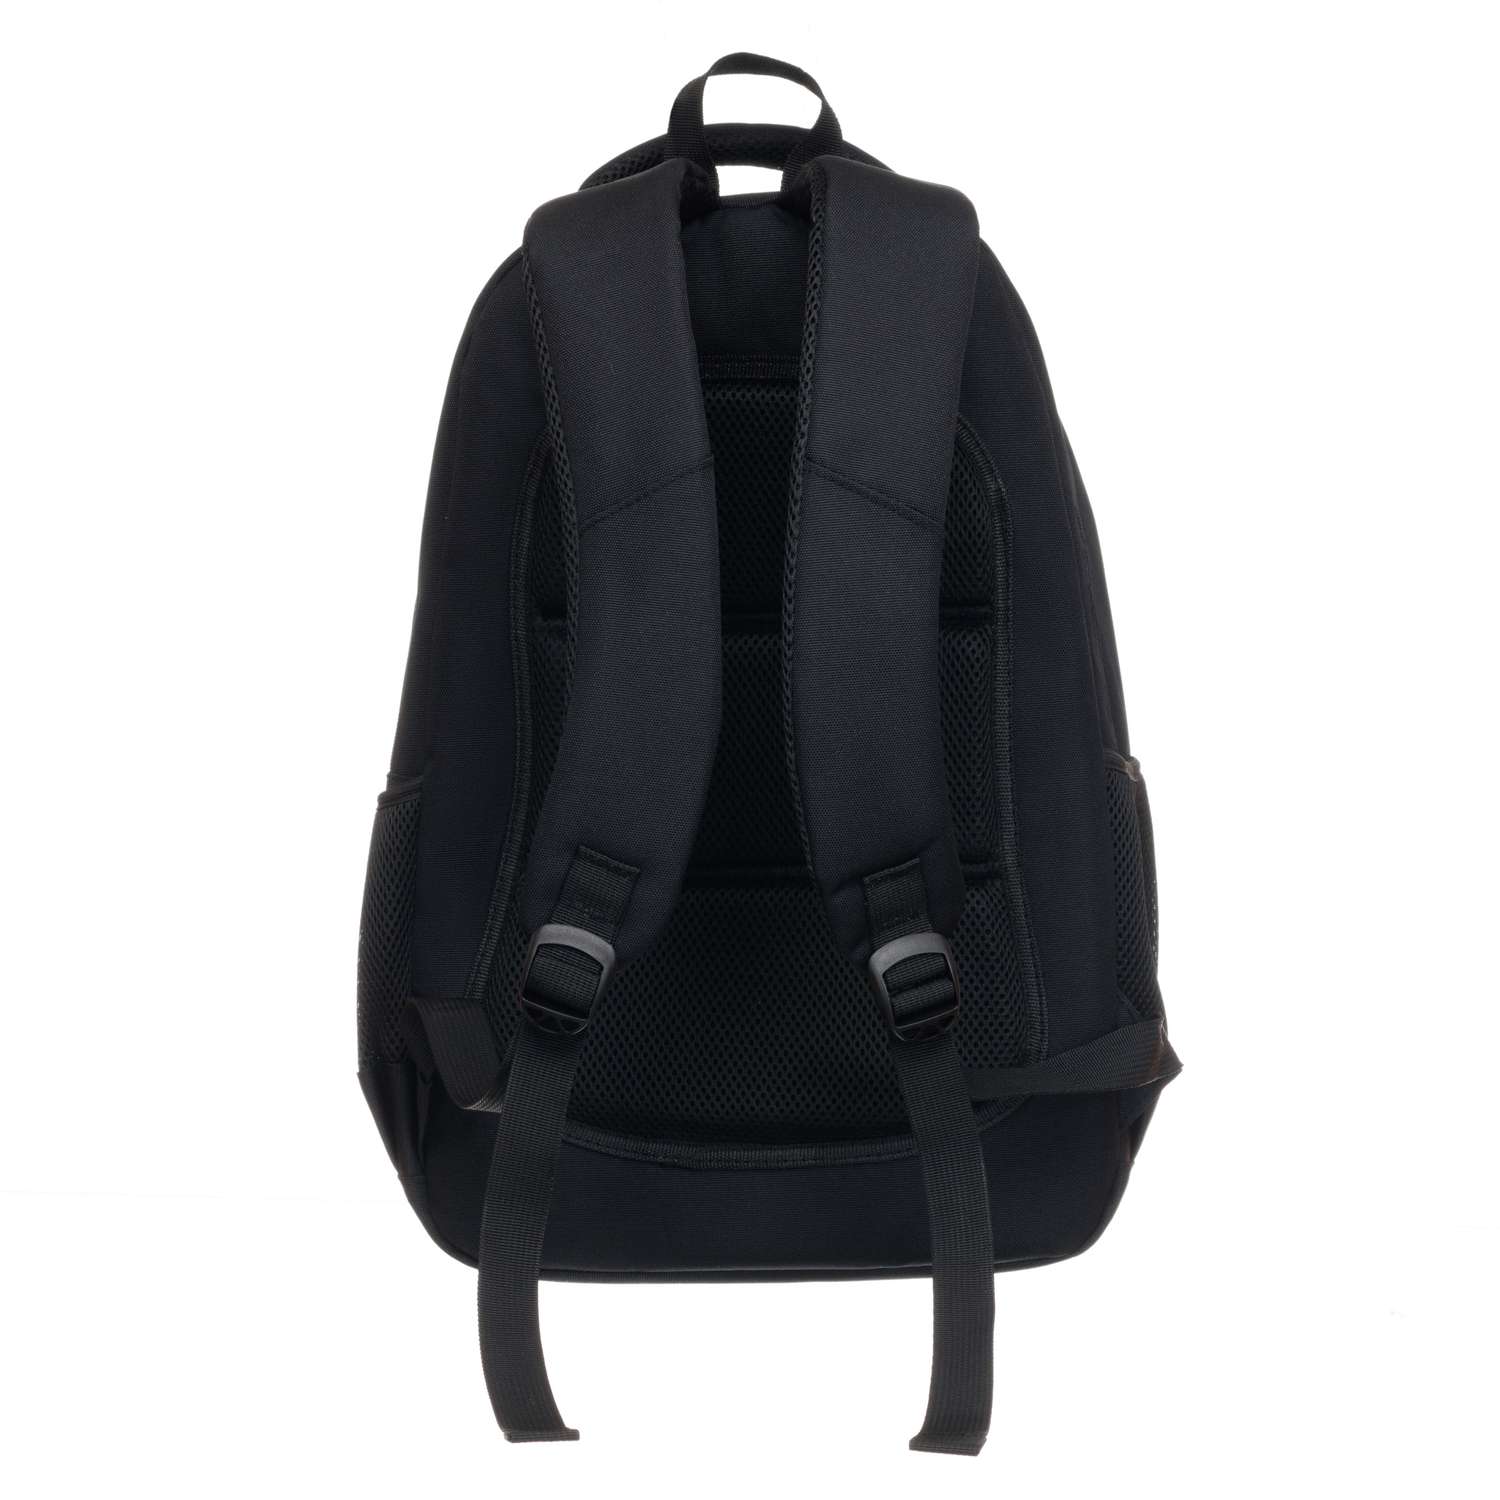 Рюкзак TORBER CLASS X черный и мешок для сменной обуви - фото 4